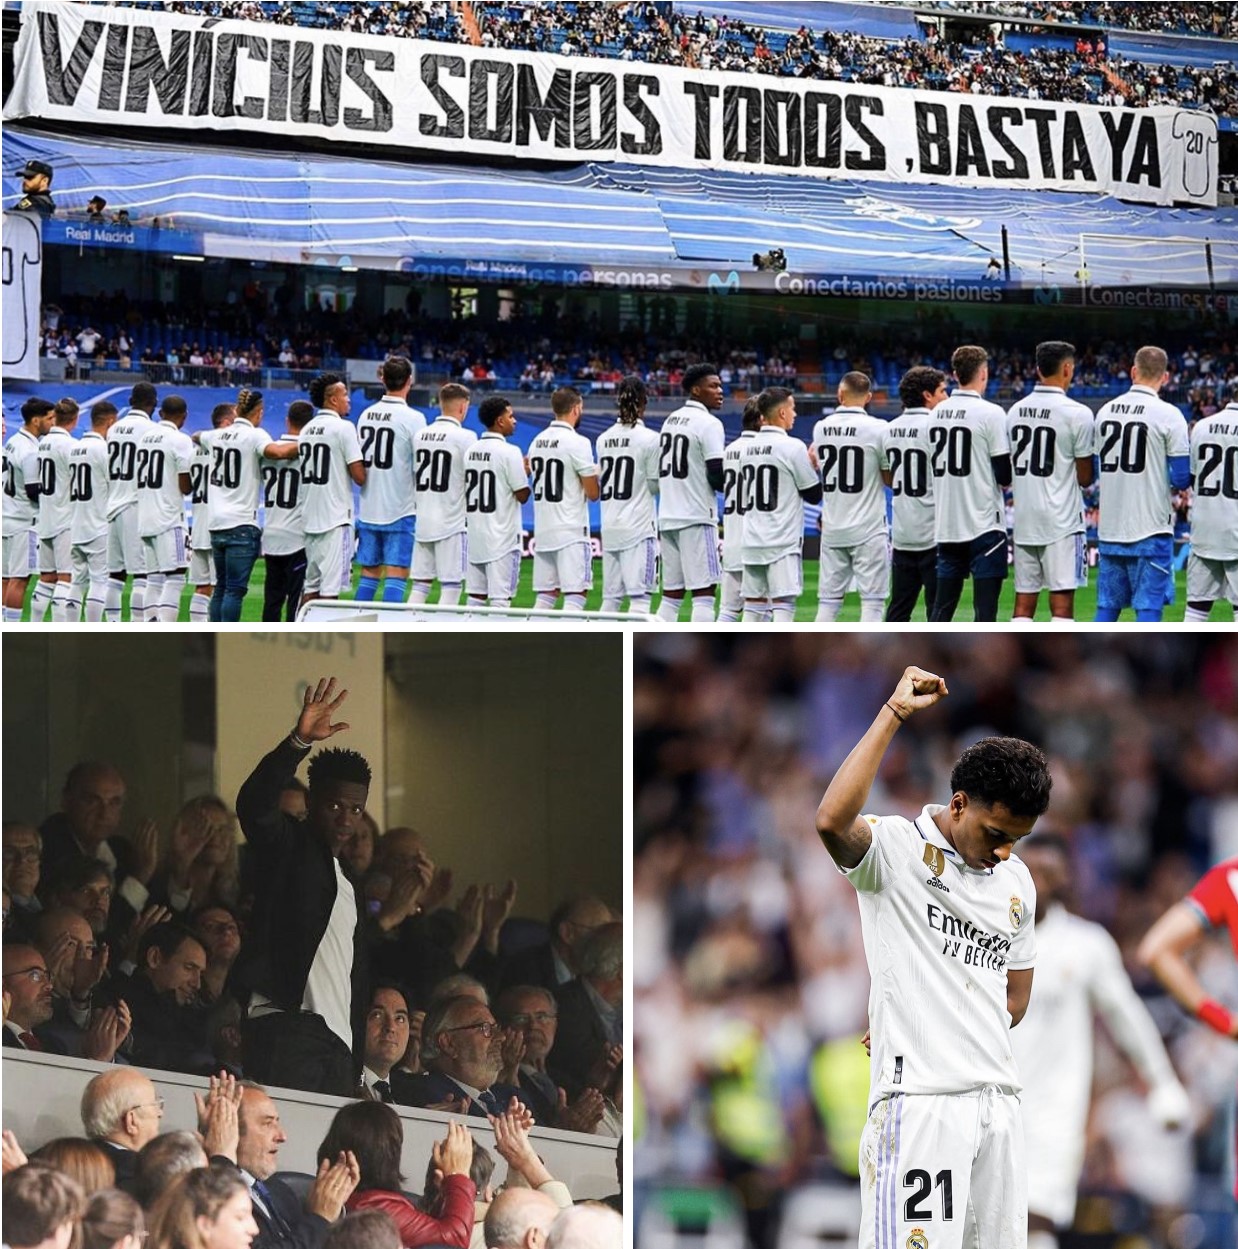 Una pancarta en gradas y playeras del brasileño portadas por sus compañeros fueron el claro mensaje hacia su jugador contra el racismo